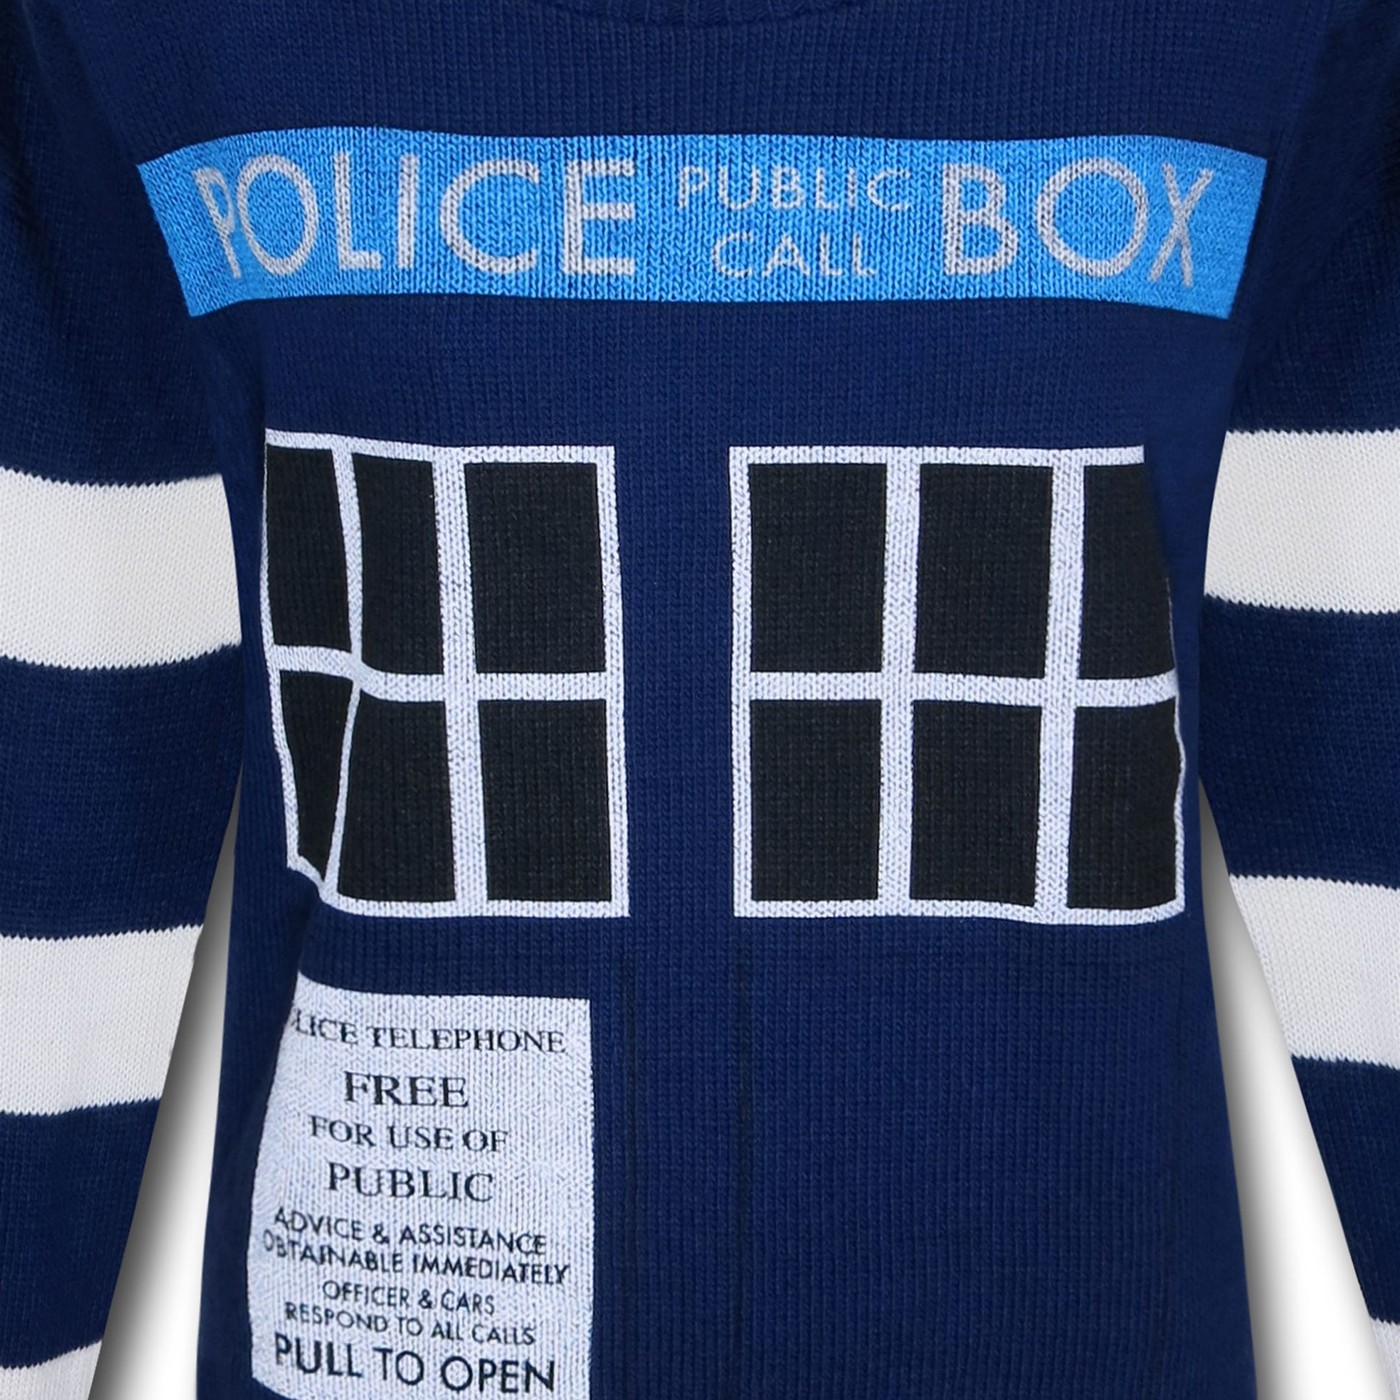 Doctor Who Women's Boyfriend Tardis Sweater